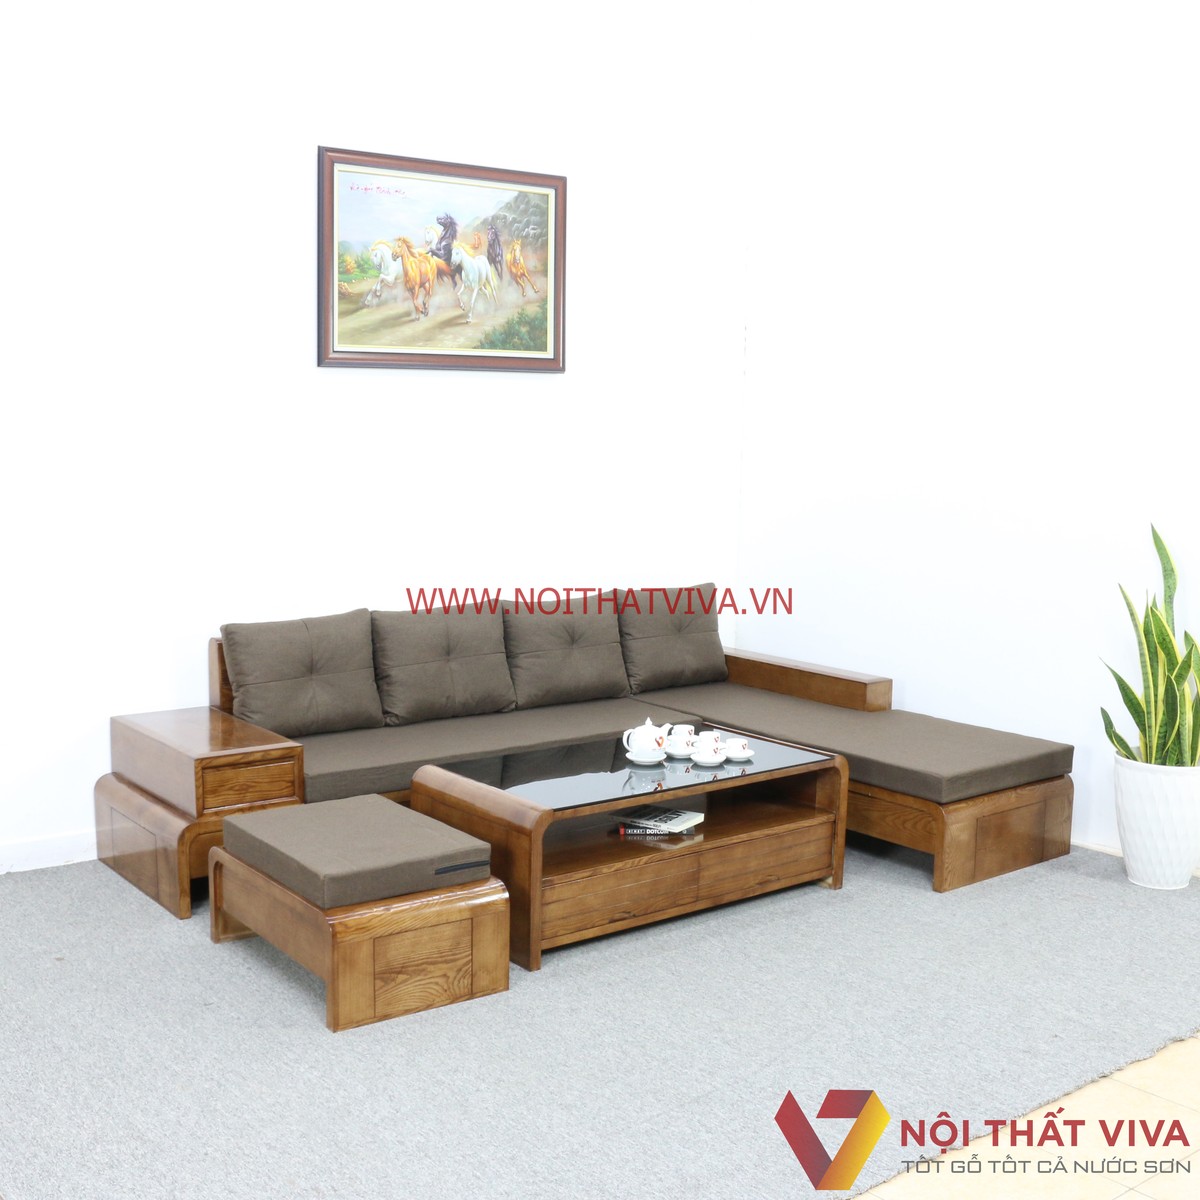 Sofa gỗ sồi tự nhiên: Sự tinh tế và sang trọng của sofa gỗ sồi tự nhiên từng bước trở thành thương hiệu nổi tiếng trên thị trường nội thất. Chất liệu gỗ đặc biệt phù hợp với khí hậu nóng ẩm của Việt Nam, giúp cho sản phẩm luôn giữ được độ bền và đẹp đến năm